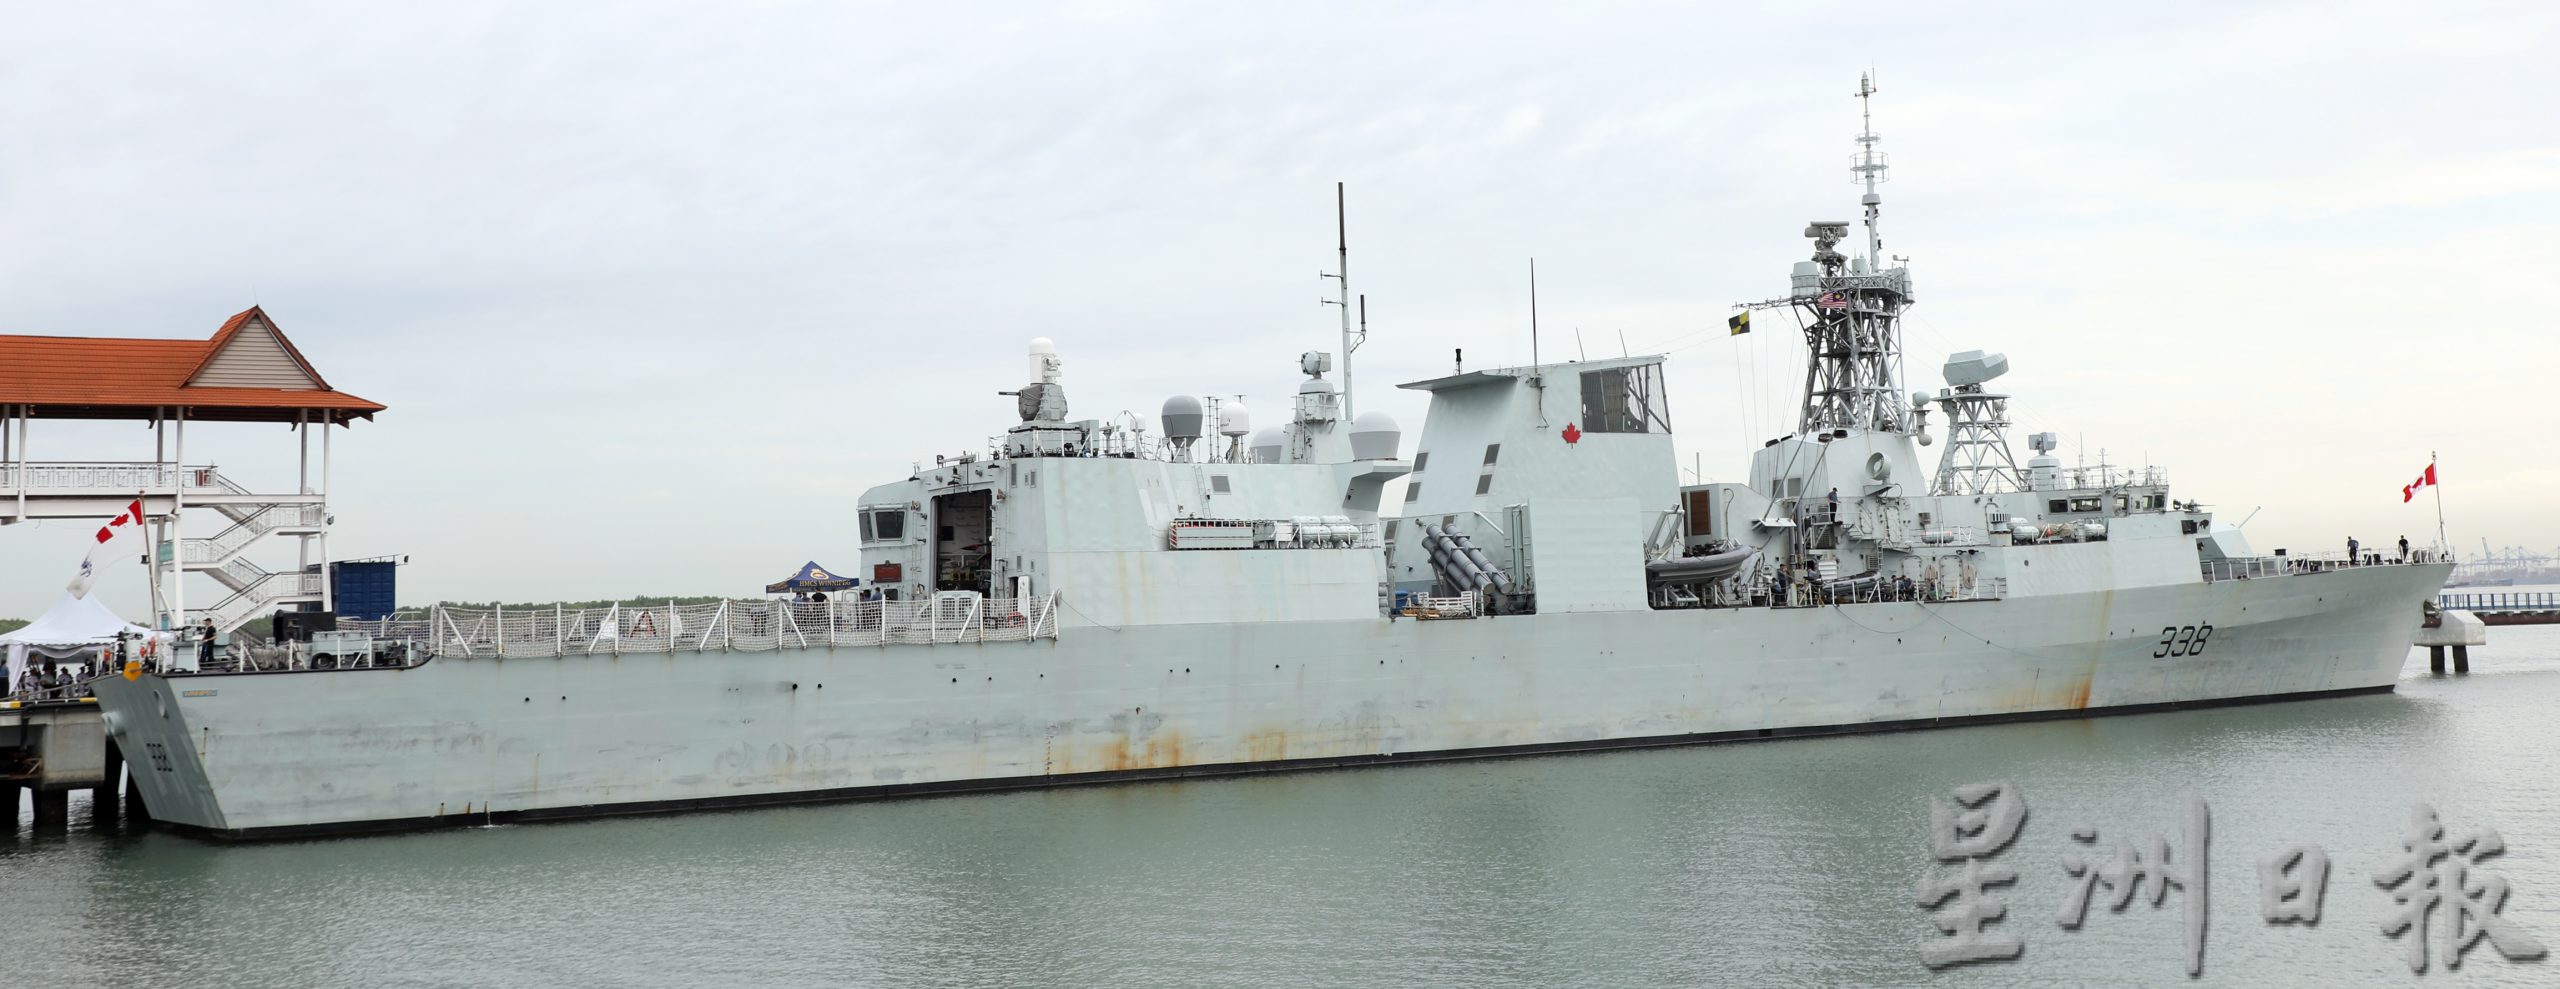 加拿大海军护卫舰“温尼伯”号结束我国7天访问